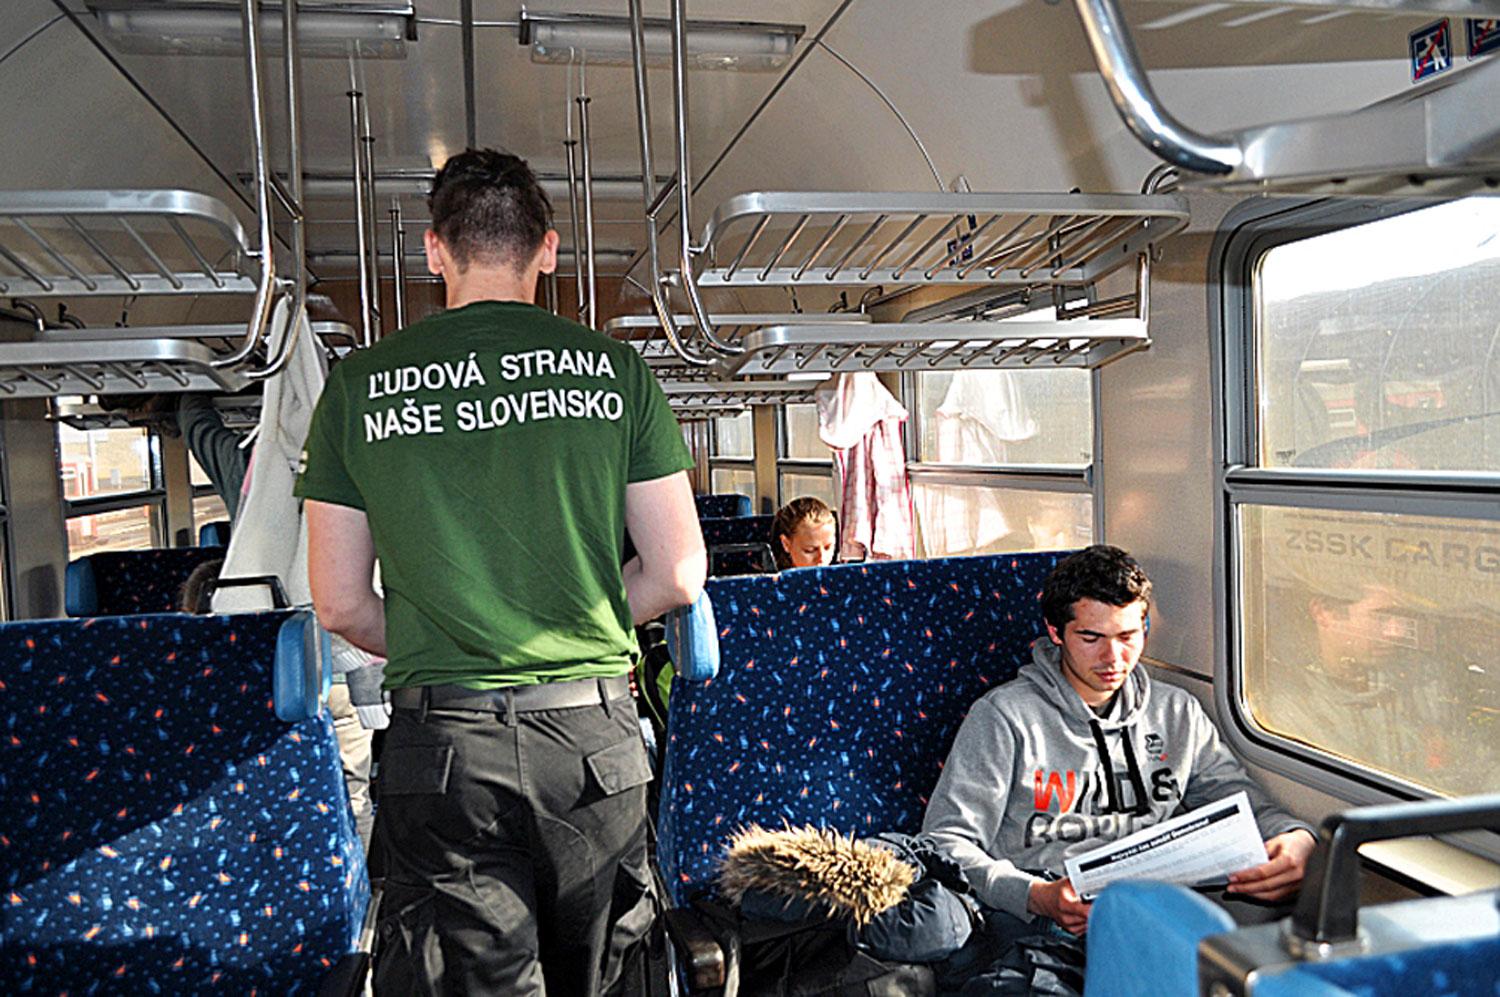 A Mi Szlovákiánk Néppárt emberei járőröznek egy vonaton. Fotó: NAseslovensko.net